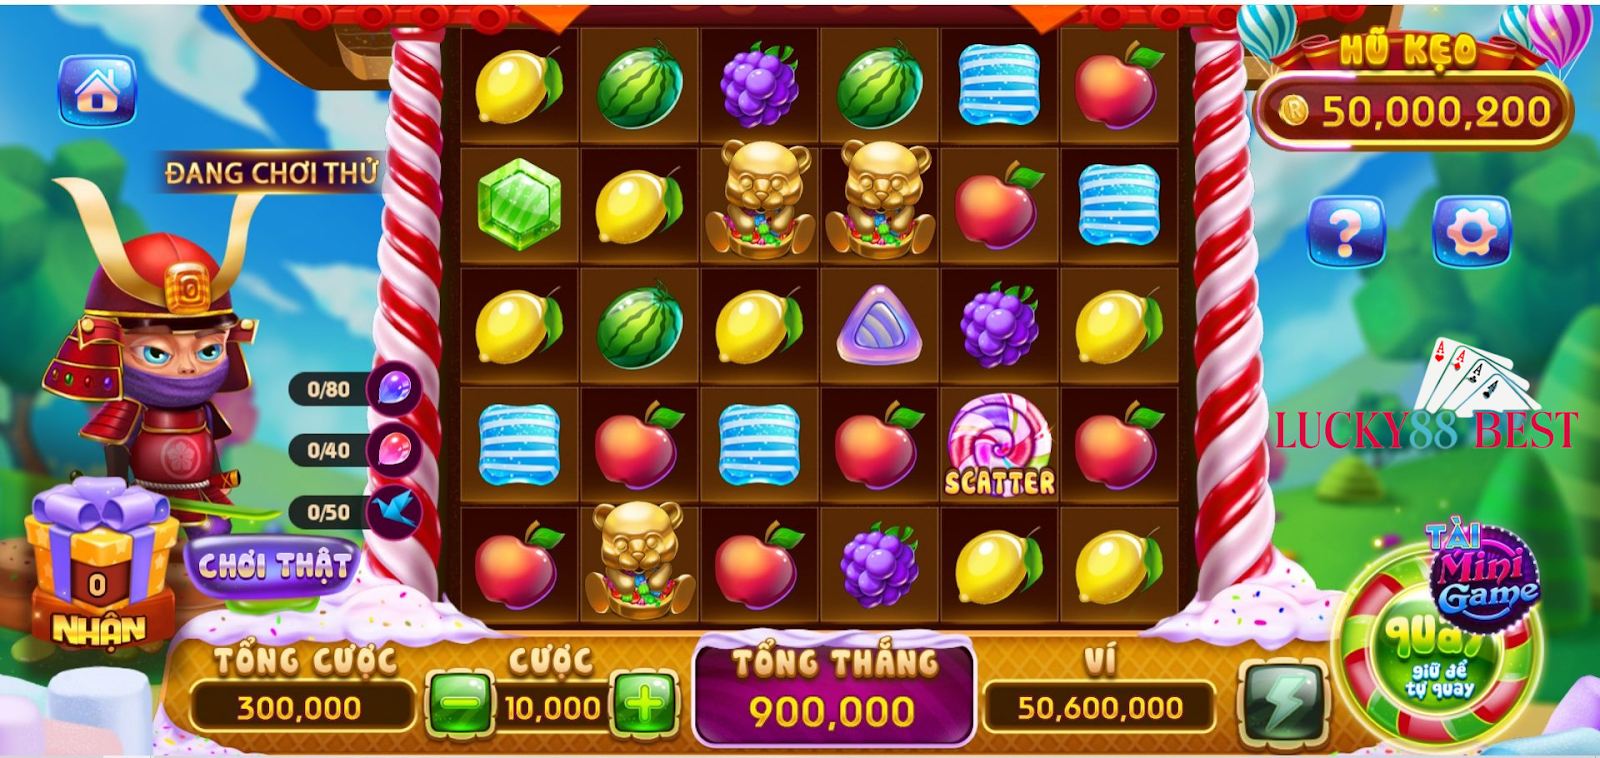 Cứ chơi nhiều là mọi người có thể trúng được giải Jackpot của Candy Fruit Samurai LUCKY88